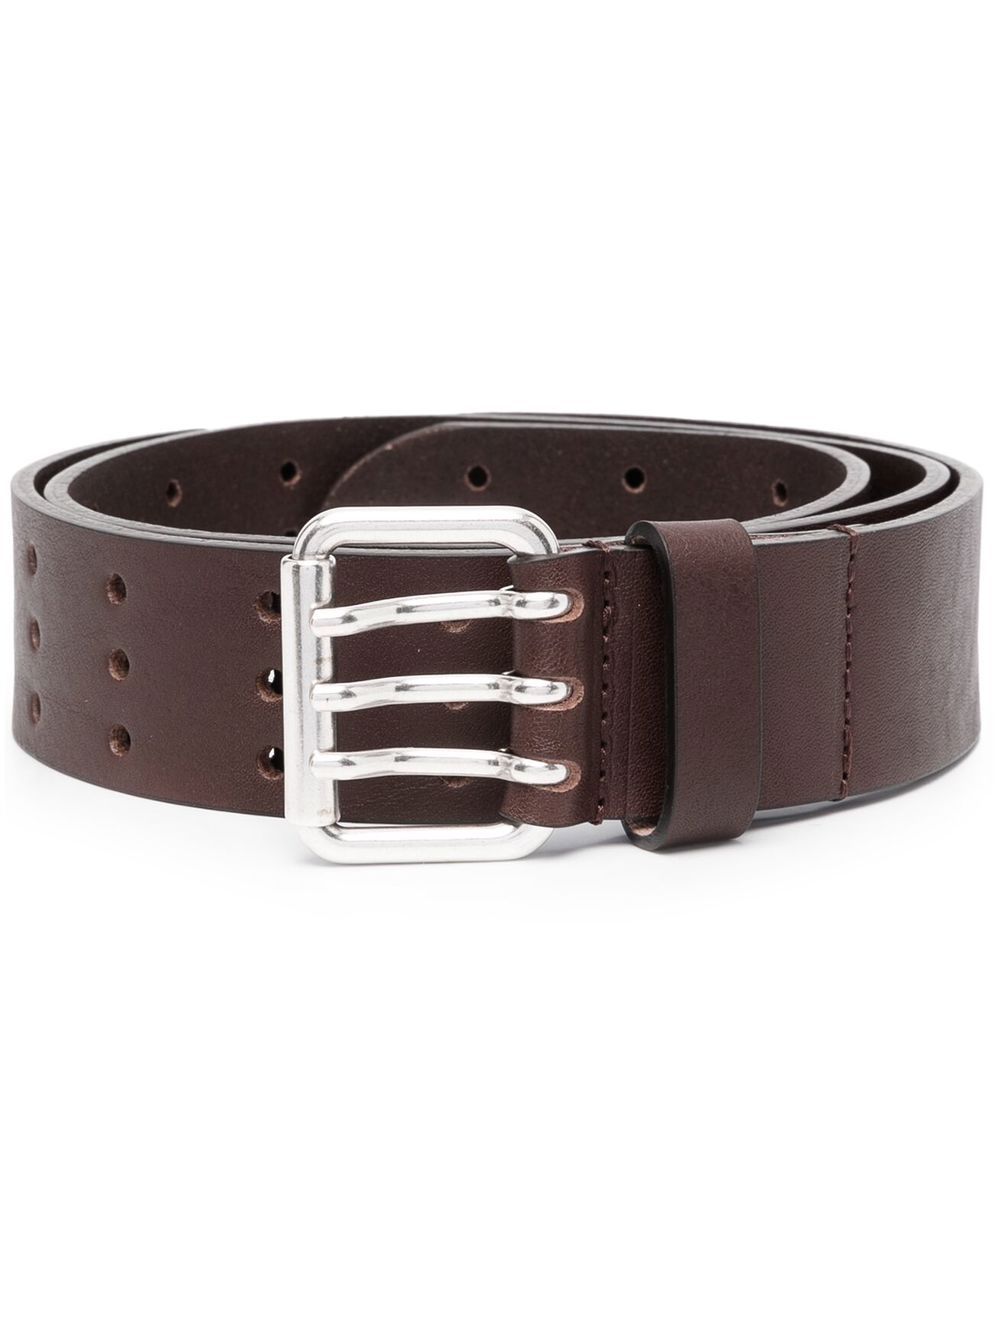 B-Mili leather belt